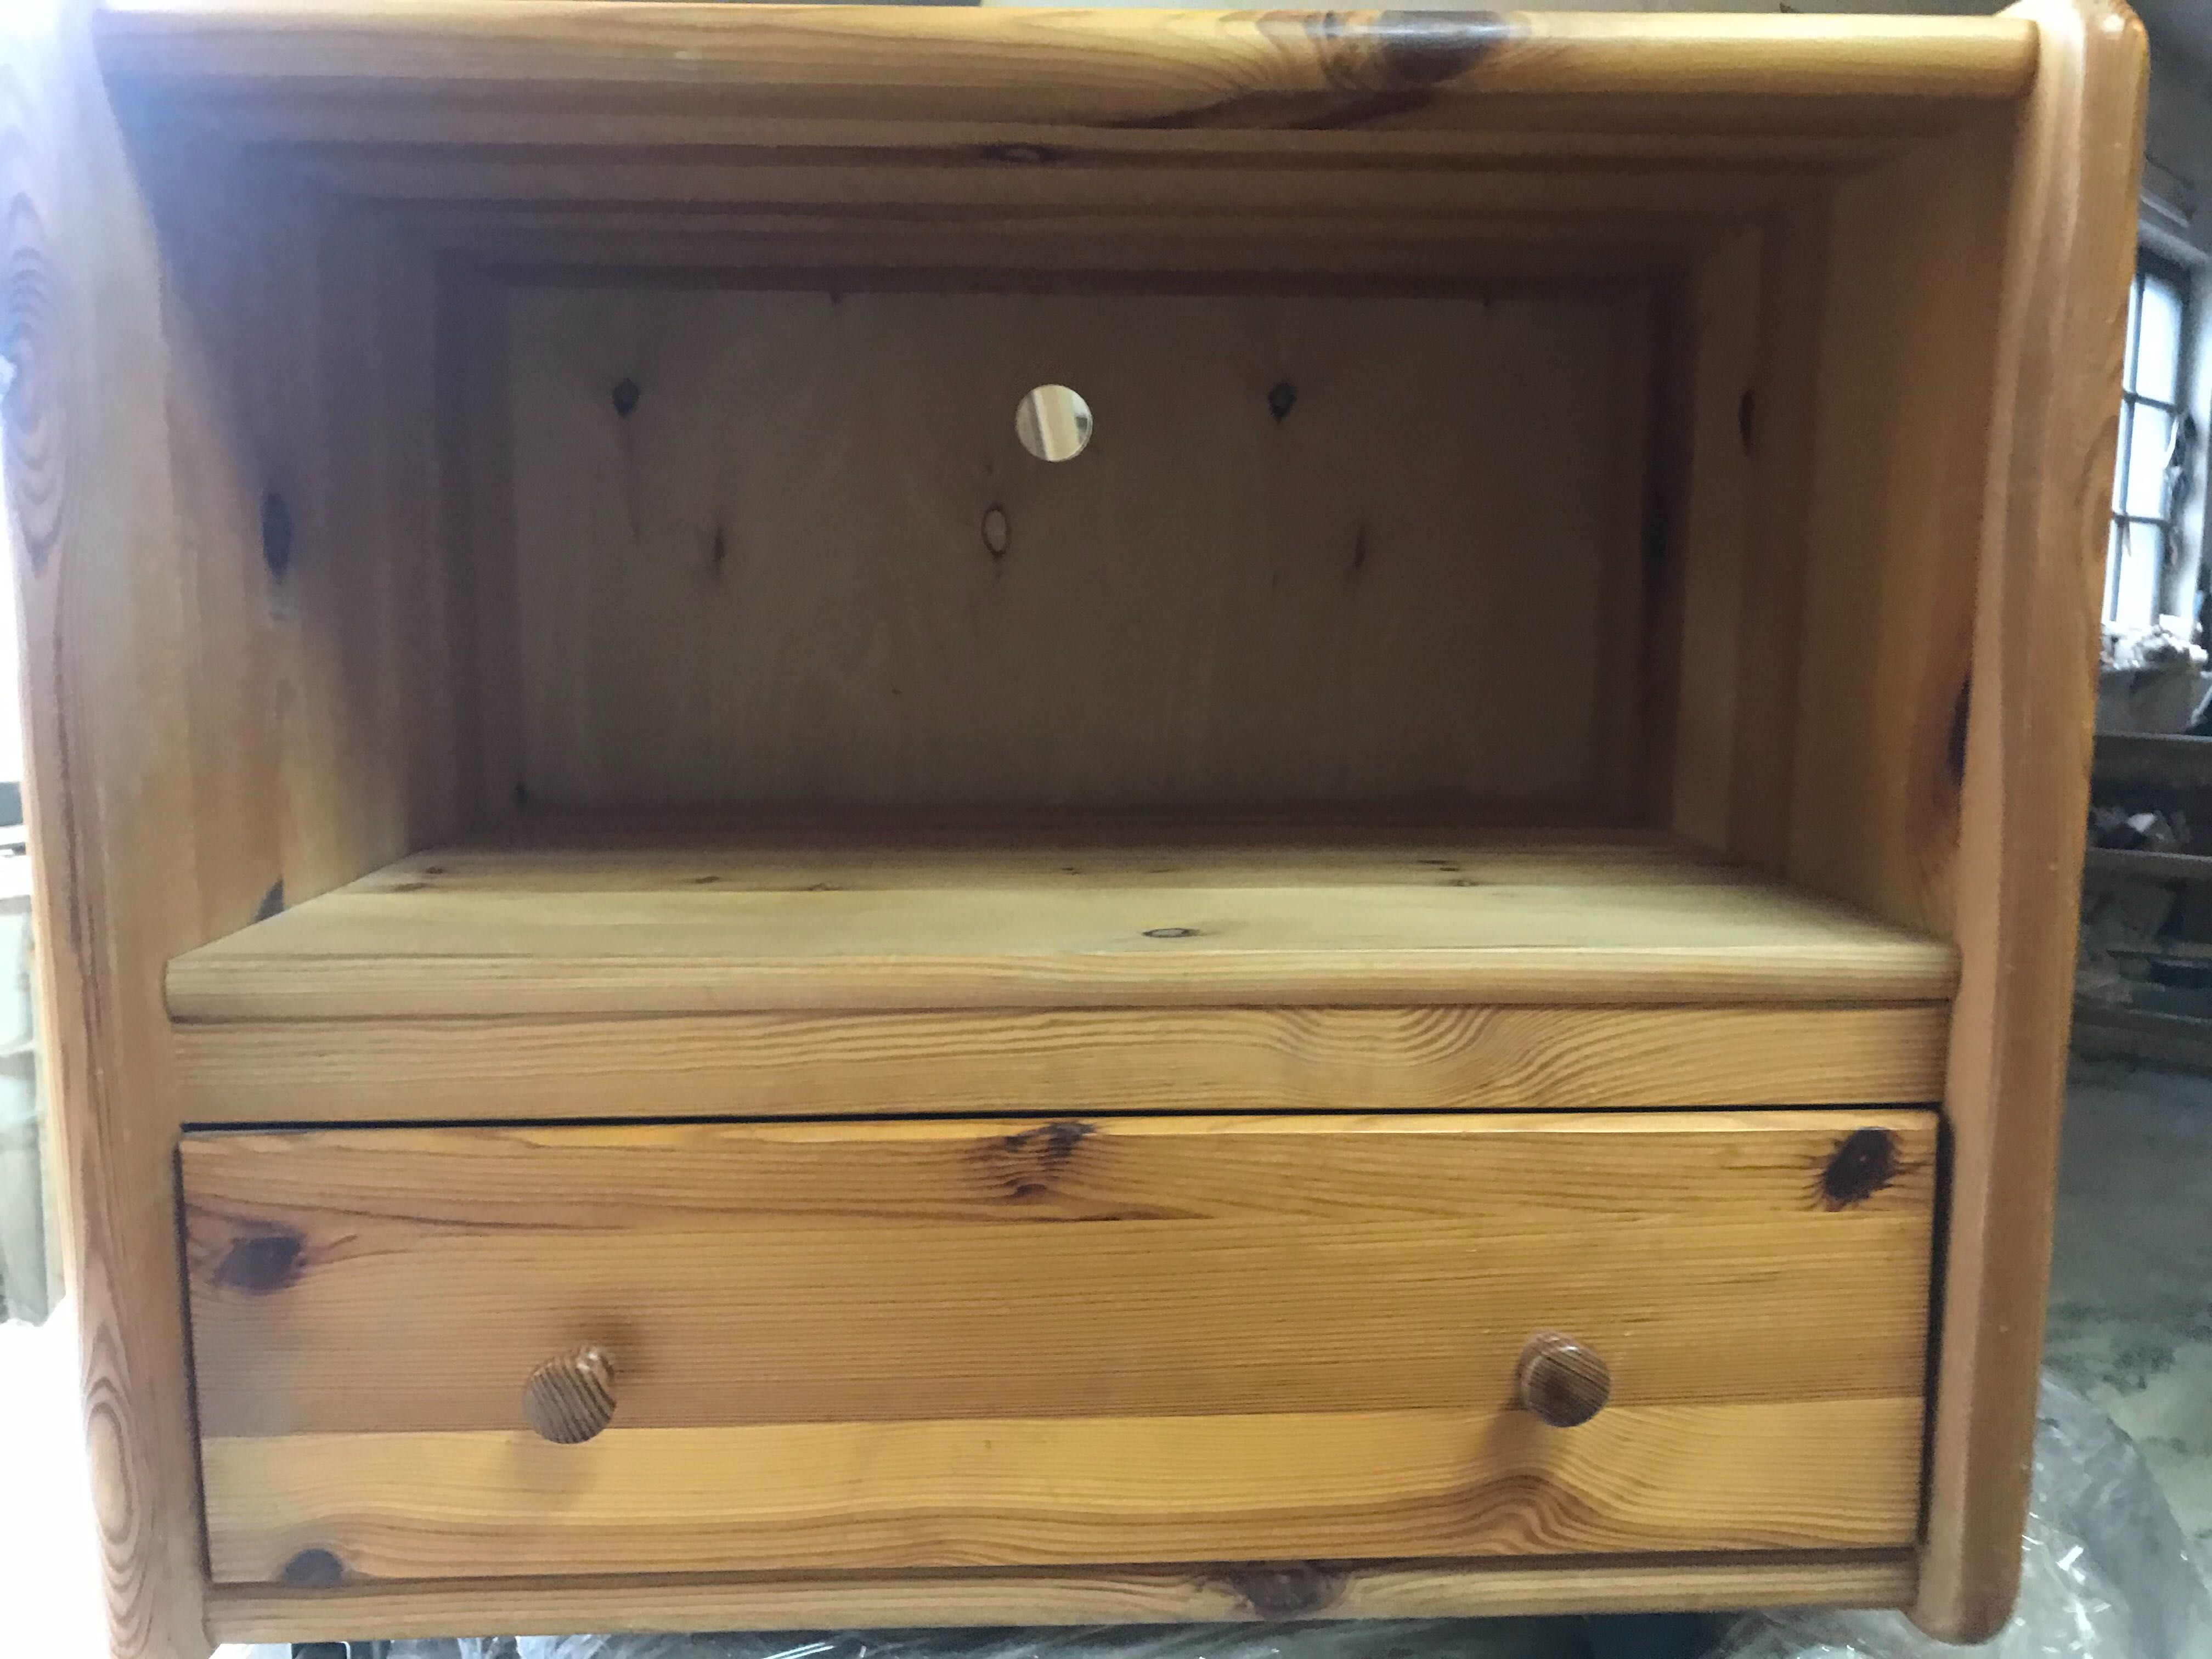 Stolik, szafka drewniana pod telewizor na kółkach z szufladą.